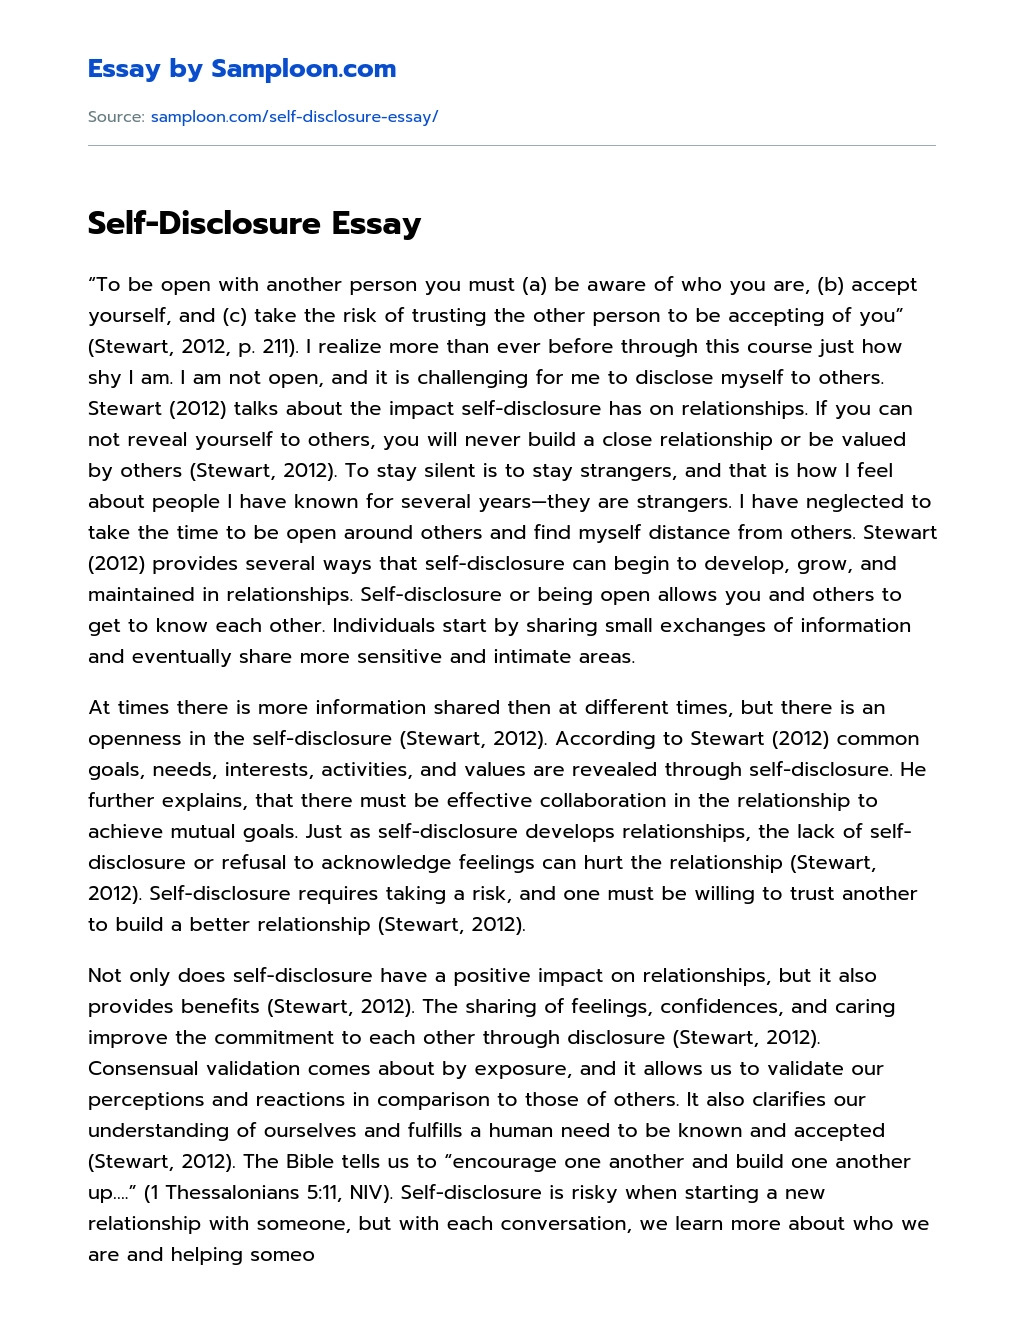 Self-Disclosure Essay essay